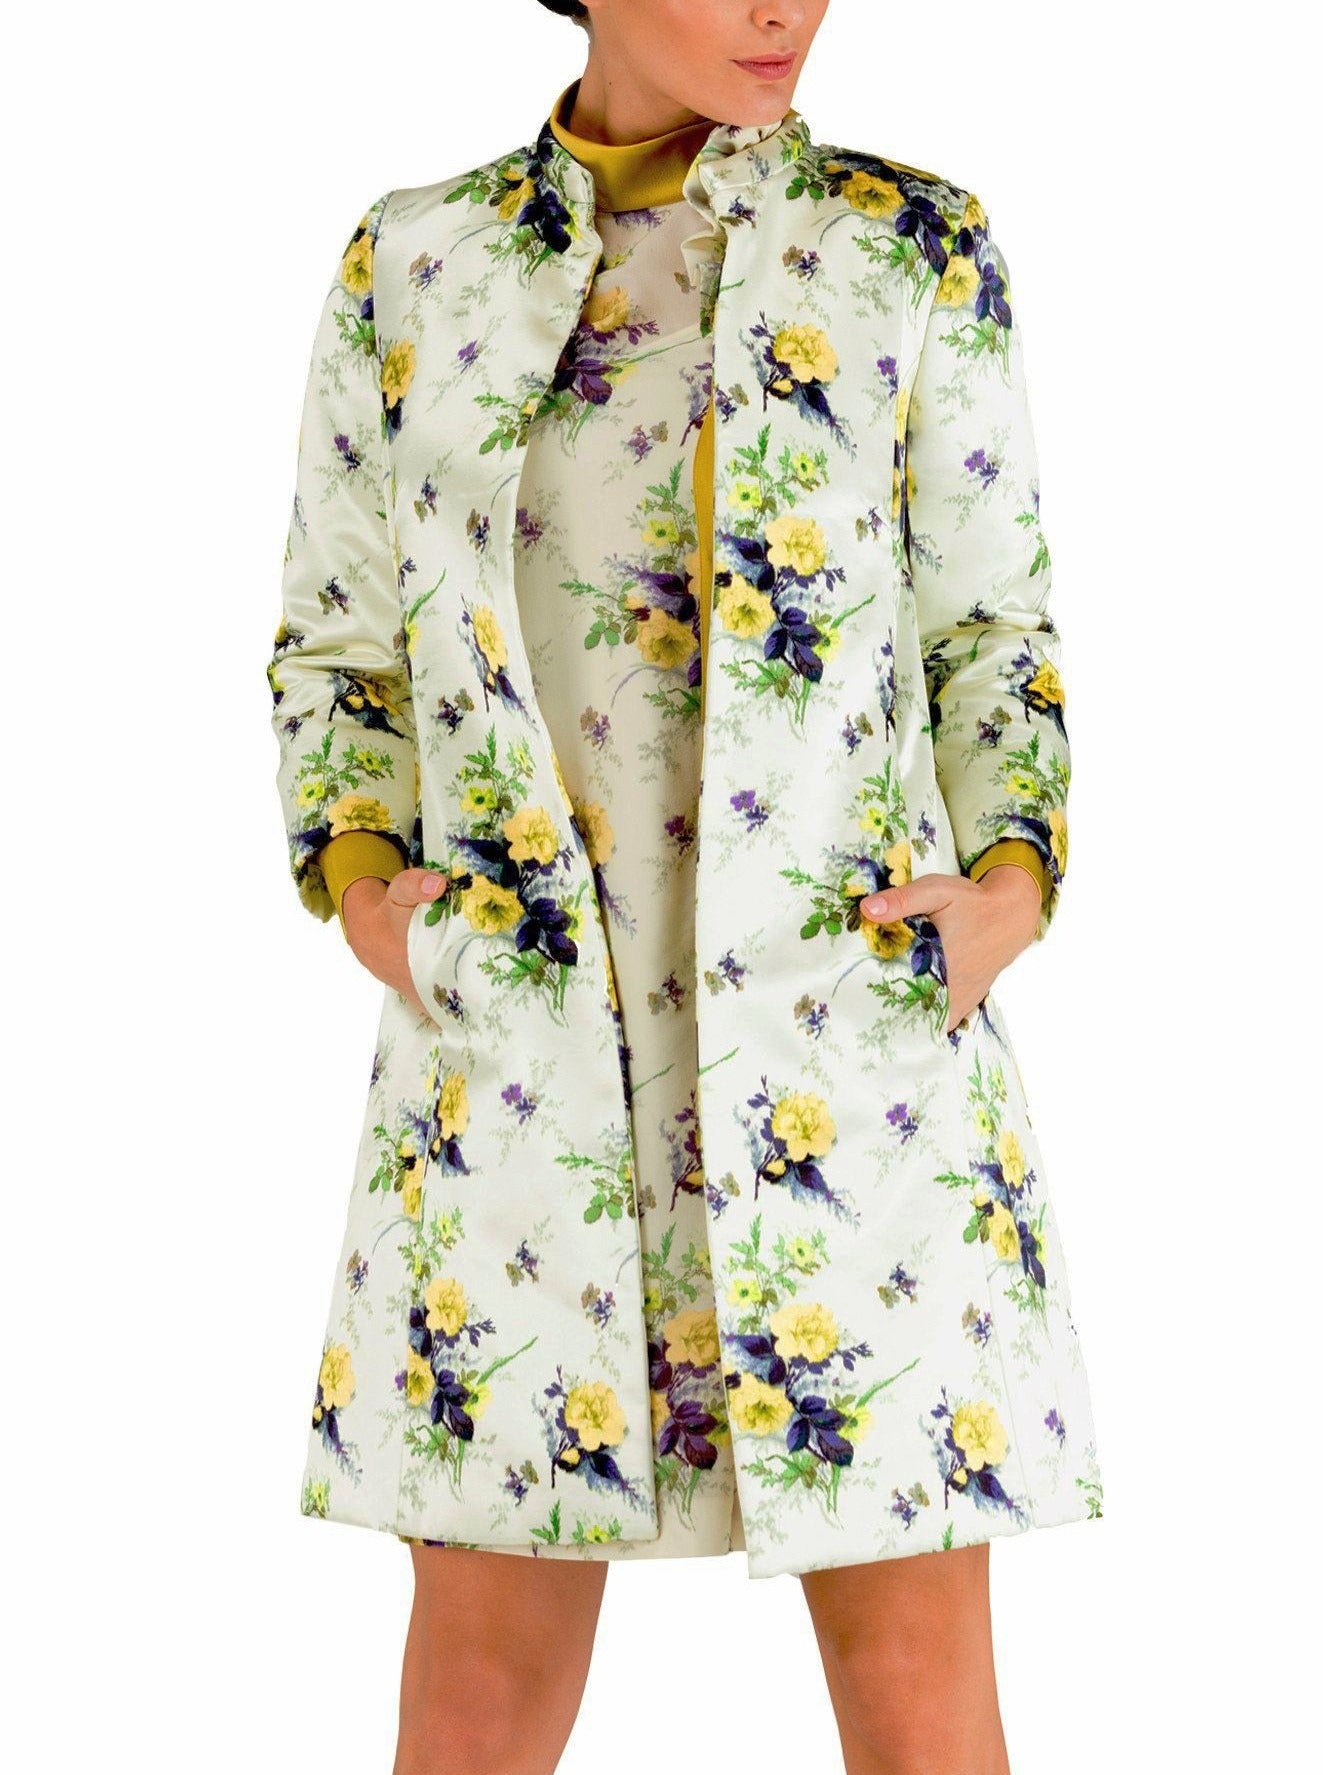 Floral silk coat - 80% off